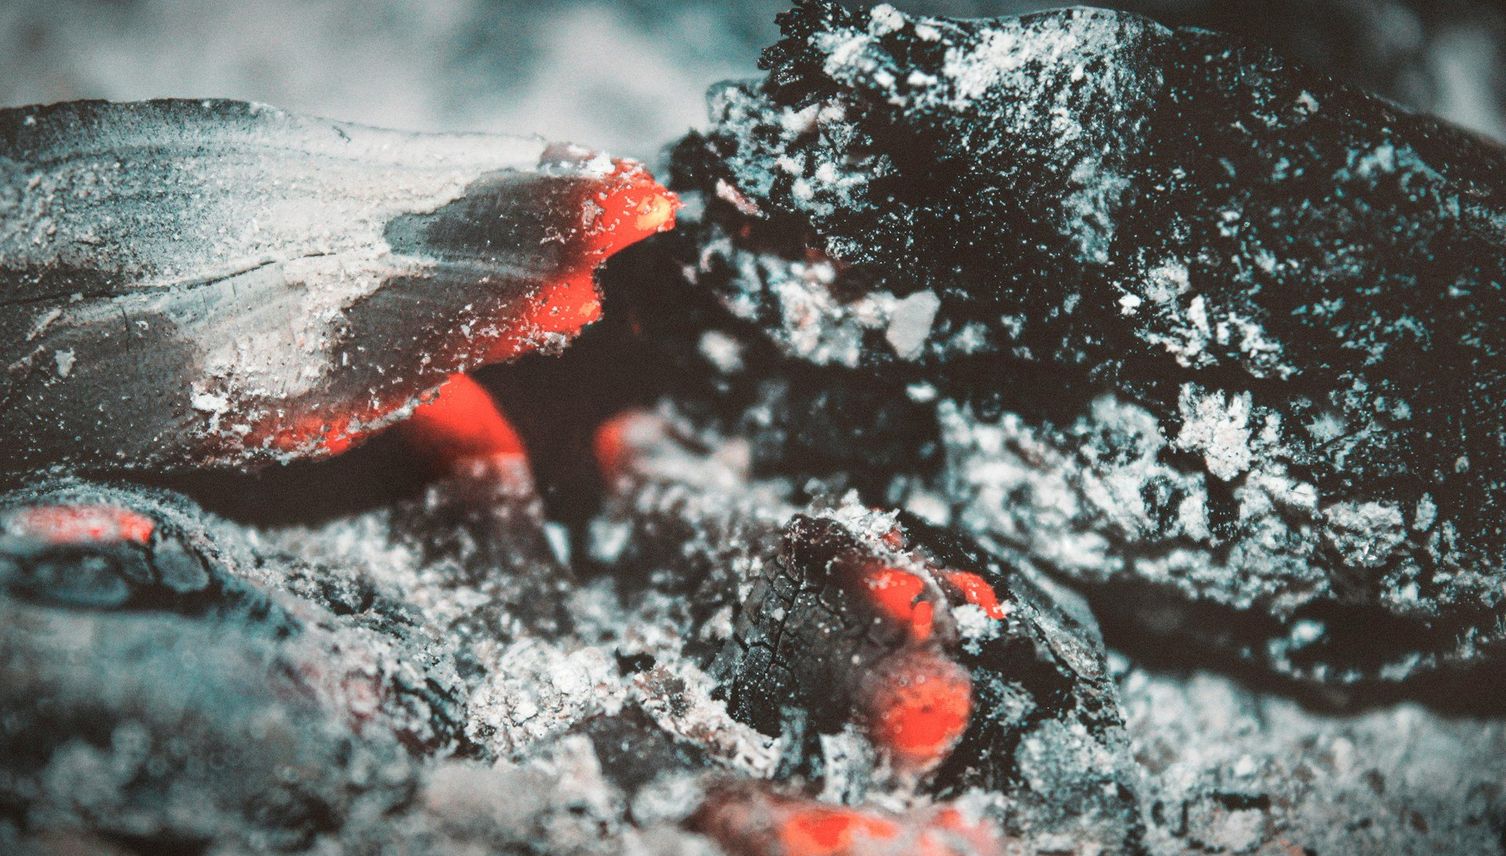 Luzernerin entsorgt Asche in Container – der fängt Feuer